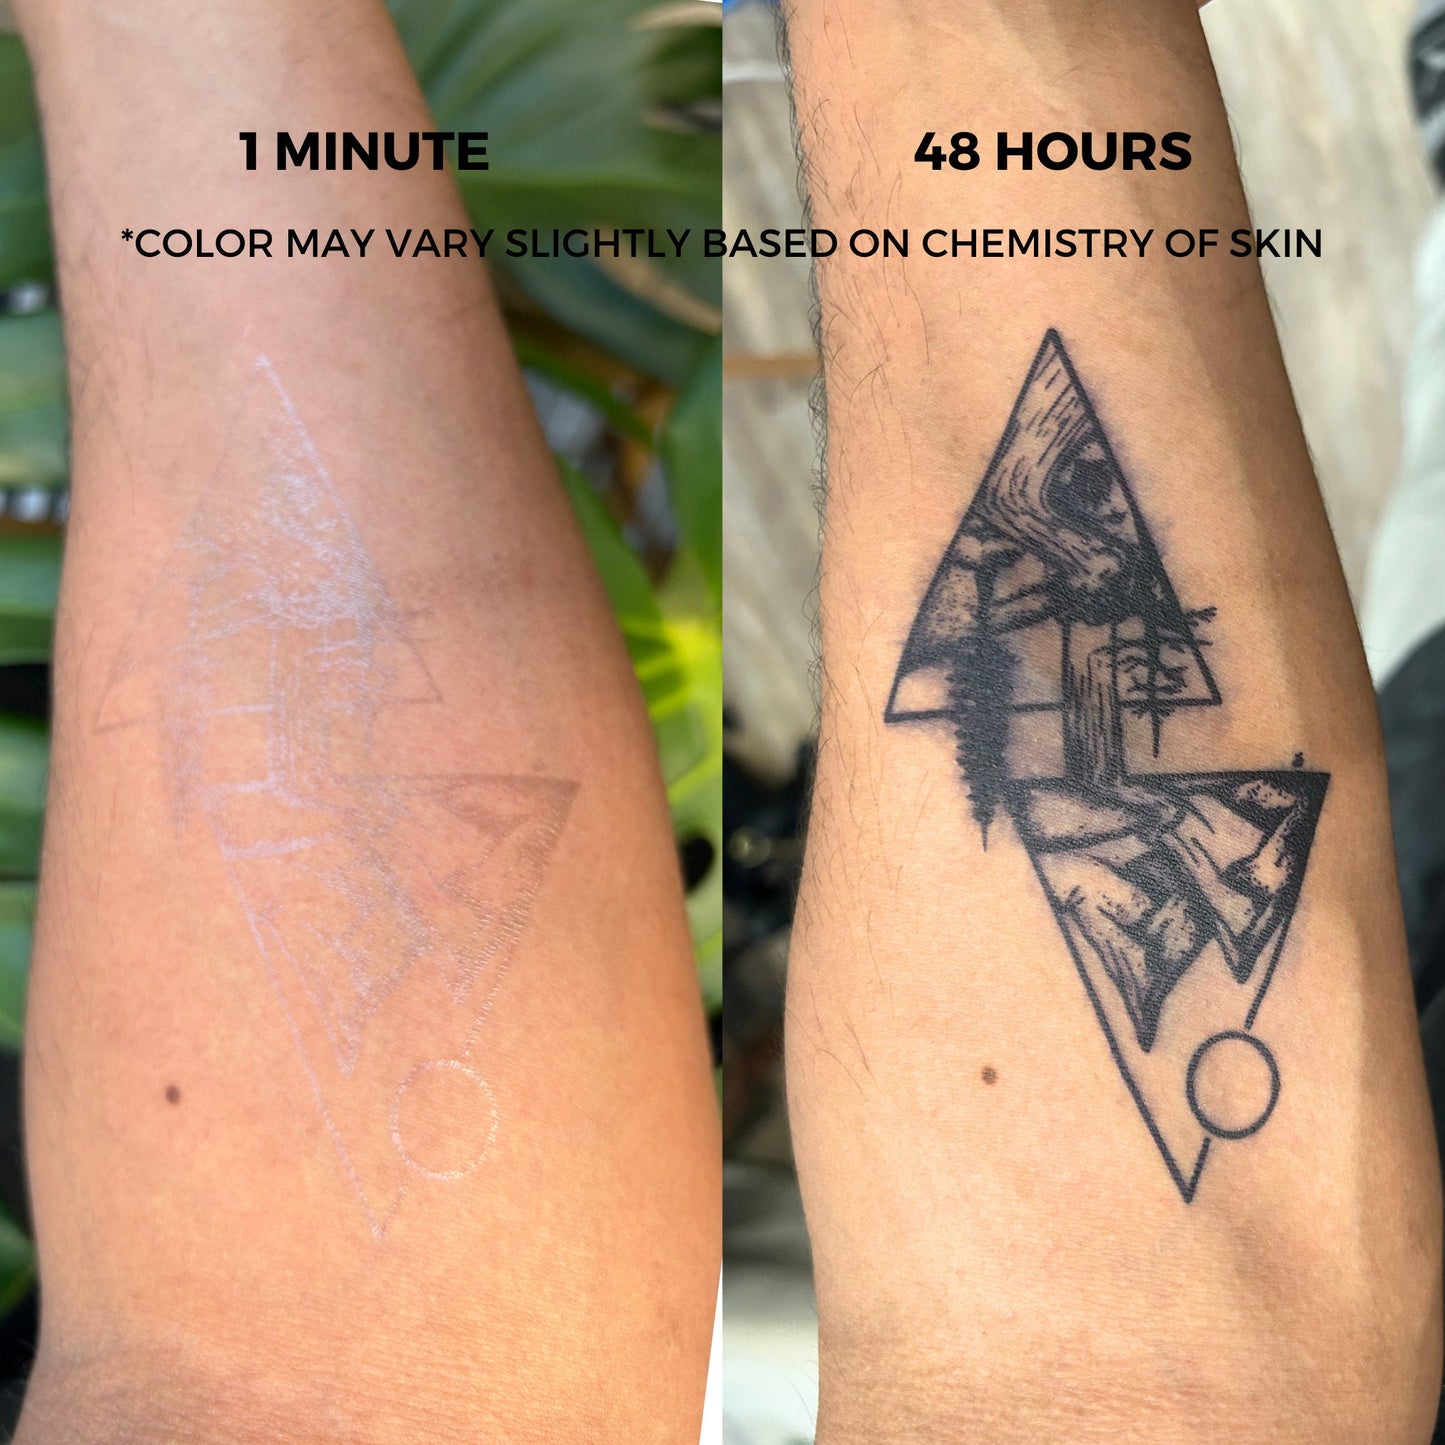 Butterfly Tattoo | 2 Week Temporary Tattoo | Plant based Vegan Tattoo | Spiritual Tattoo | Symbolic Tattoo | Butterflies Tattoo | Minimalist Tattoo